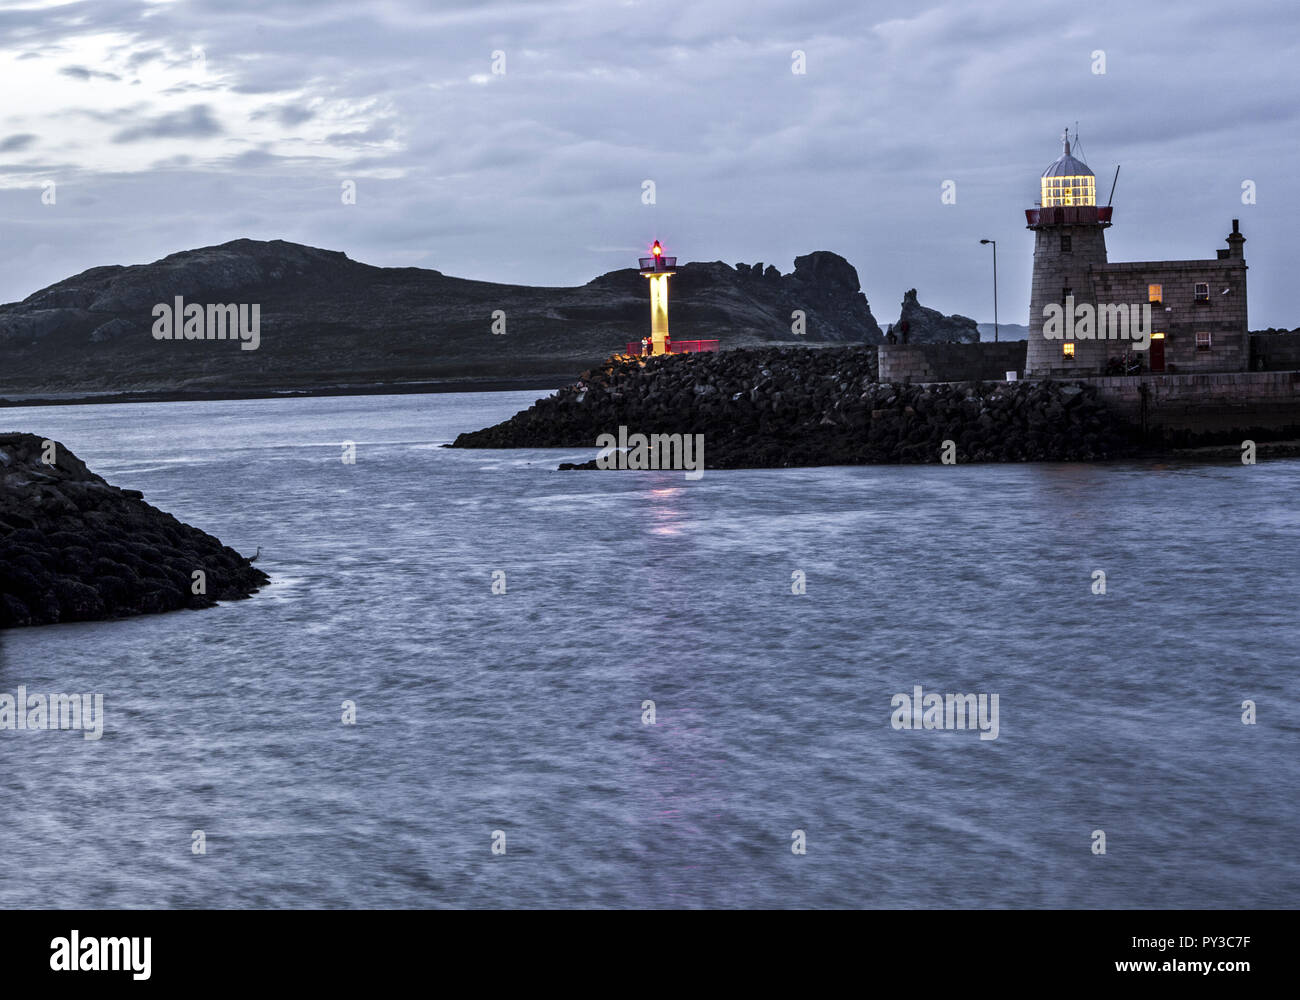 Irland, Leuchtturm an einer Bucht, abends Stock Photo